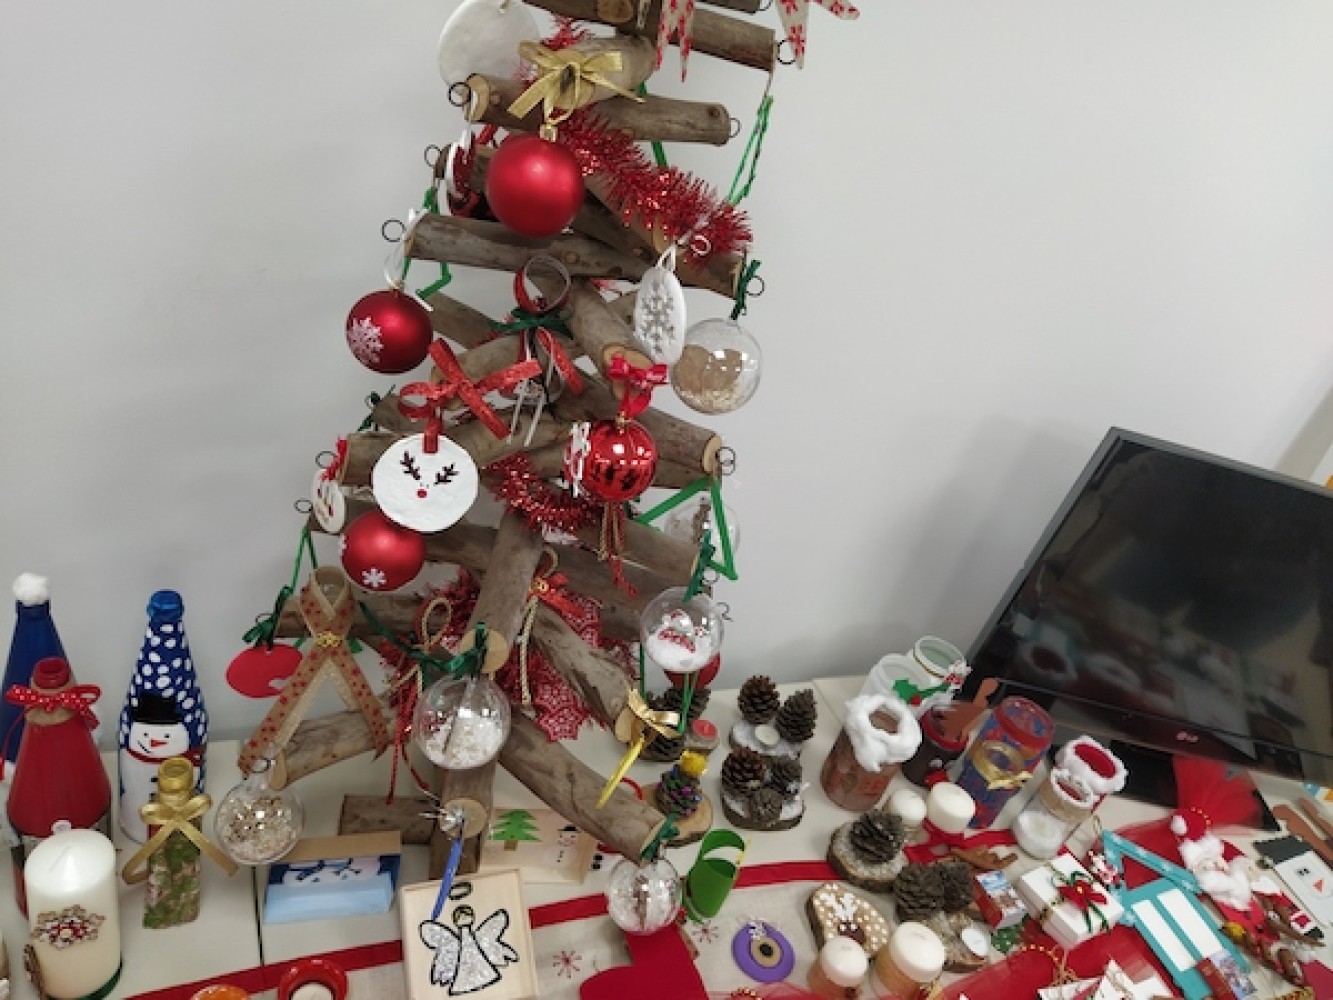 Χριστουγεννιάτικο Bazaar του ΙΕΚ ΔΕΛΤΑ 360 υπέρ των παιδιών της ΕΛΕΠΑΠ